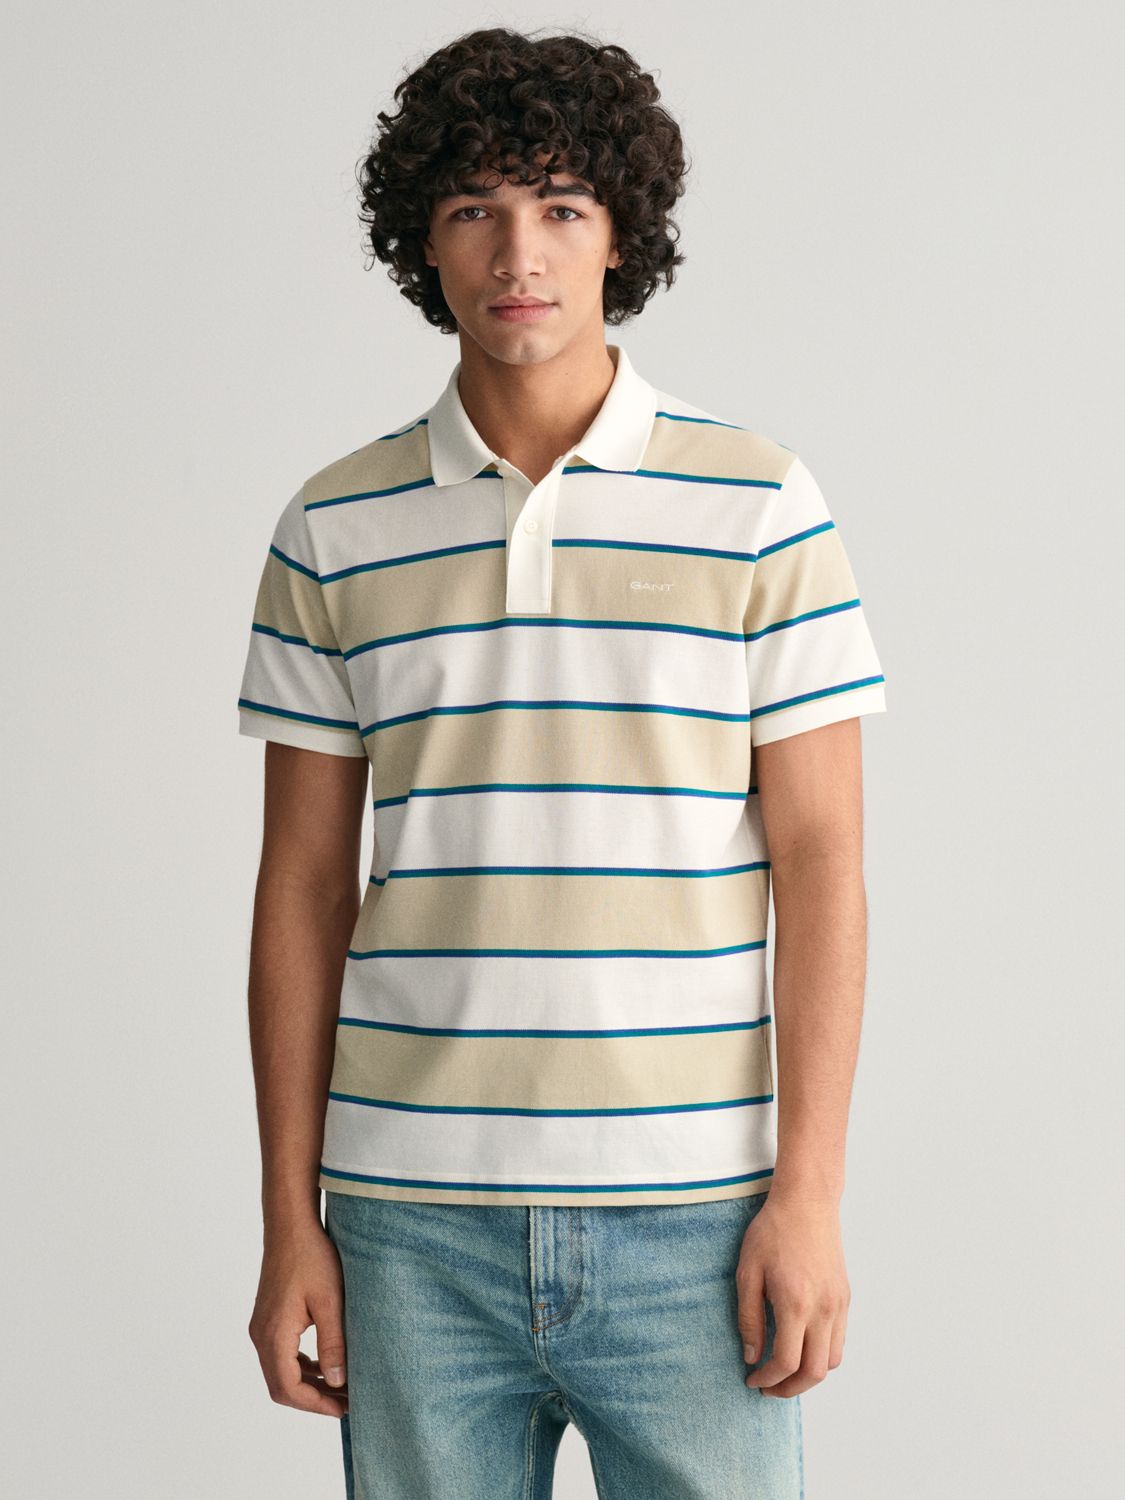 GANT Striped Pique Polo Shirt, Silky Beige, M